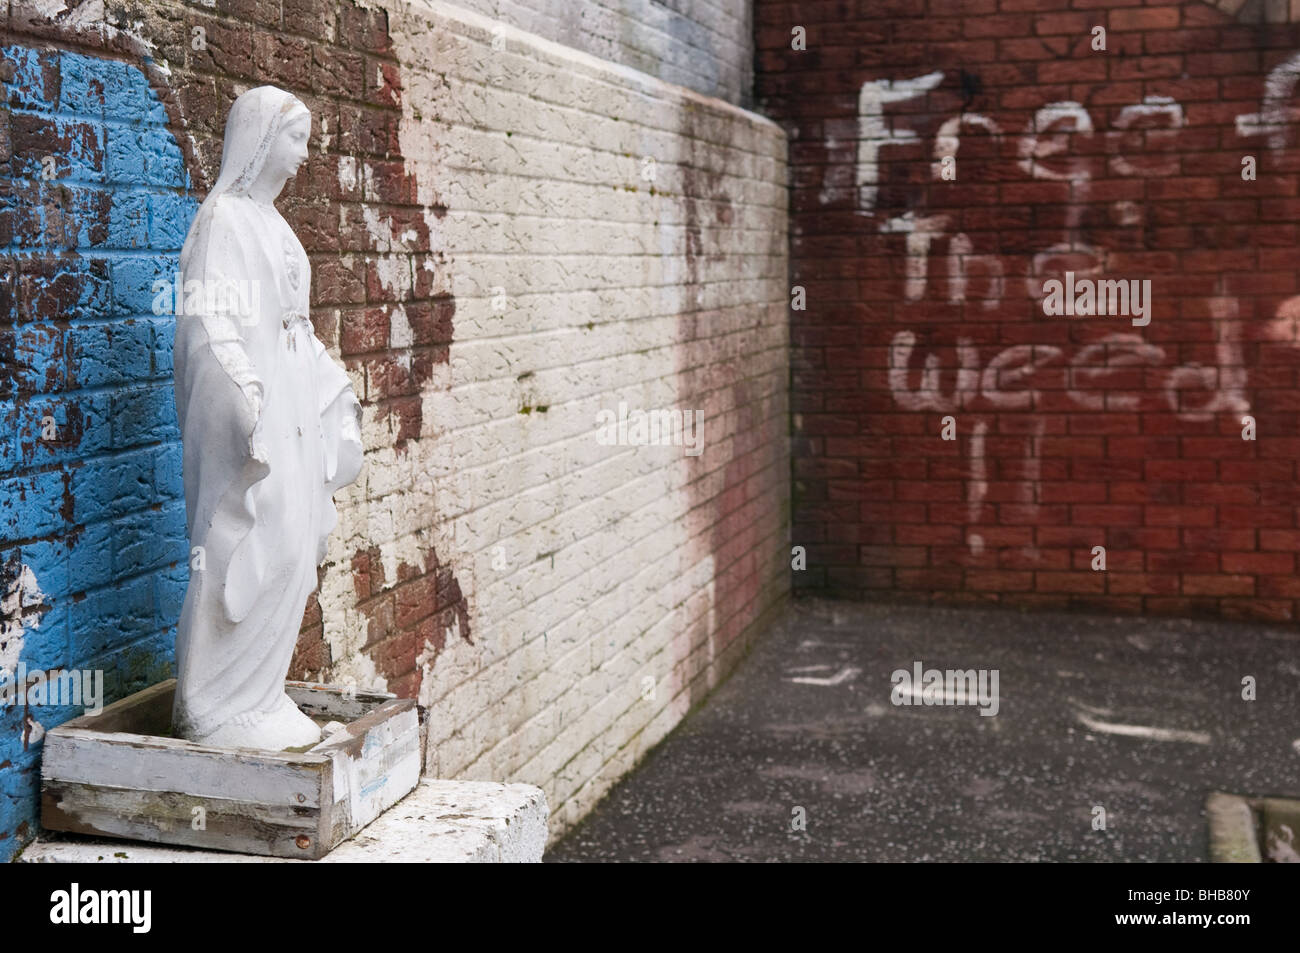 Graffiti dicendo "libera la weed' accanto a una statua della Vergine Maria. Foto Stock